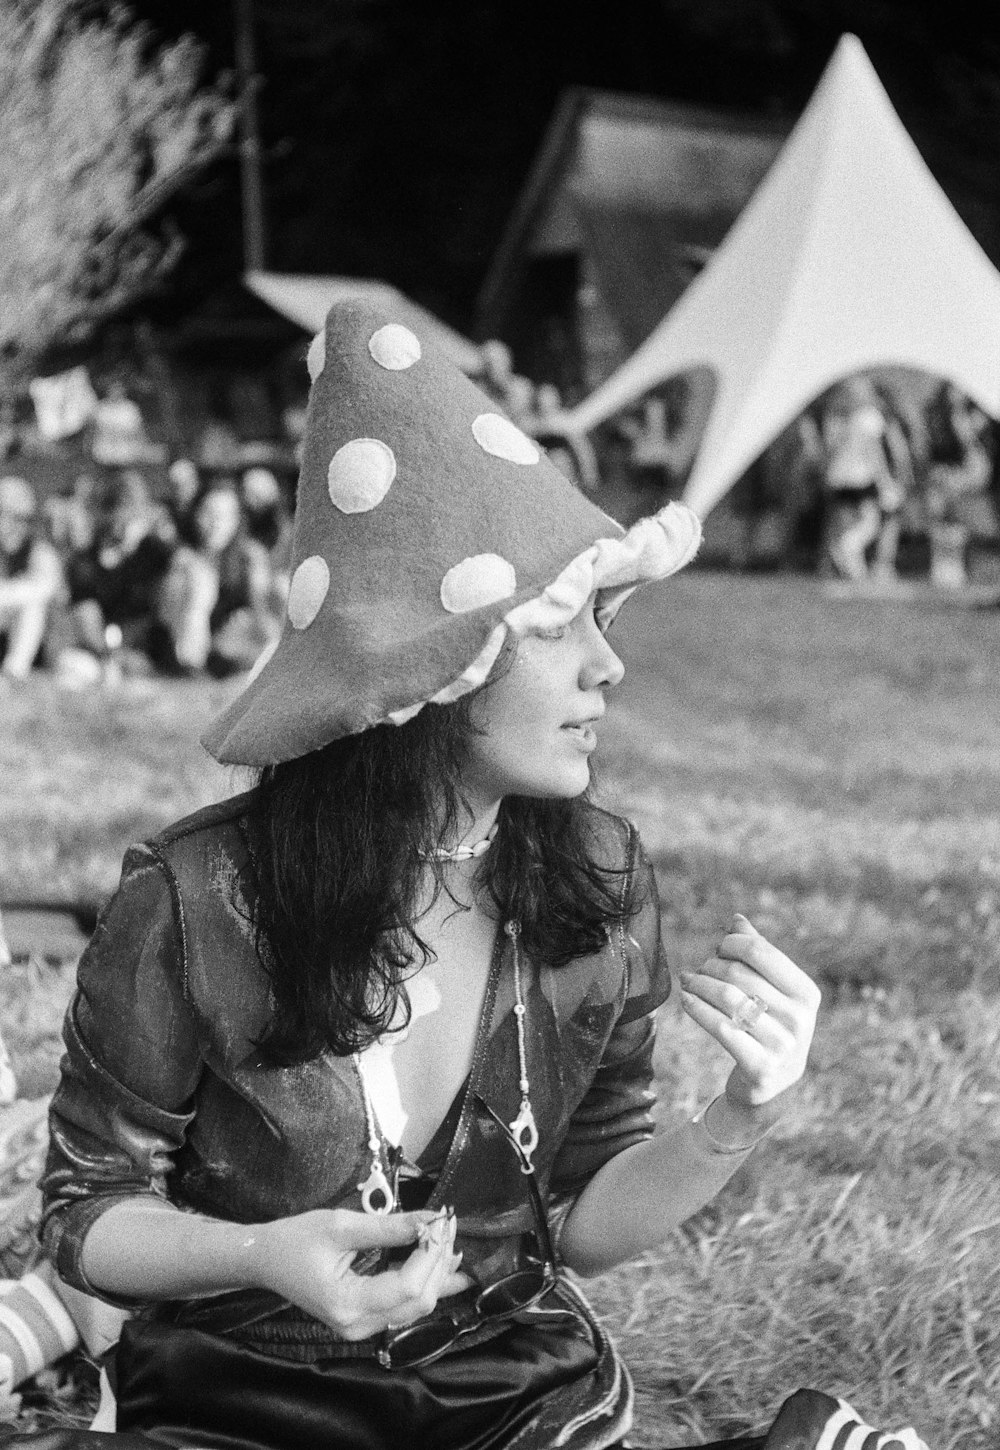 水玉模様の帽子をかぶった地面に座っている女性